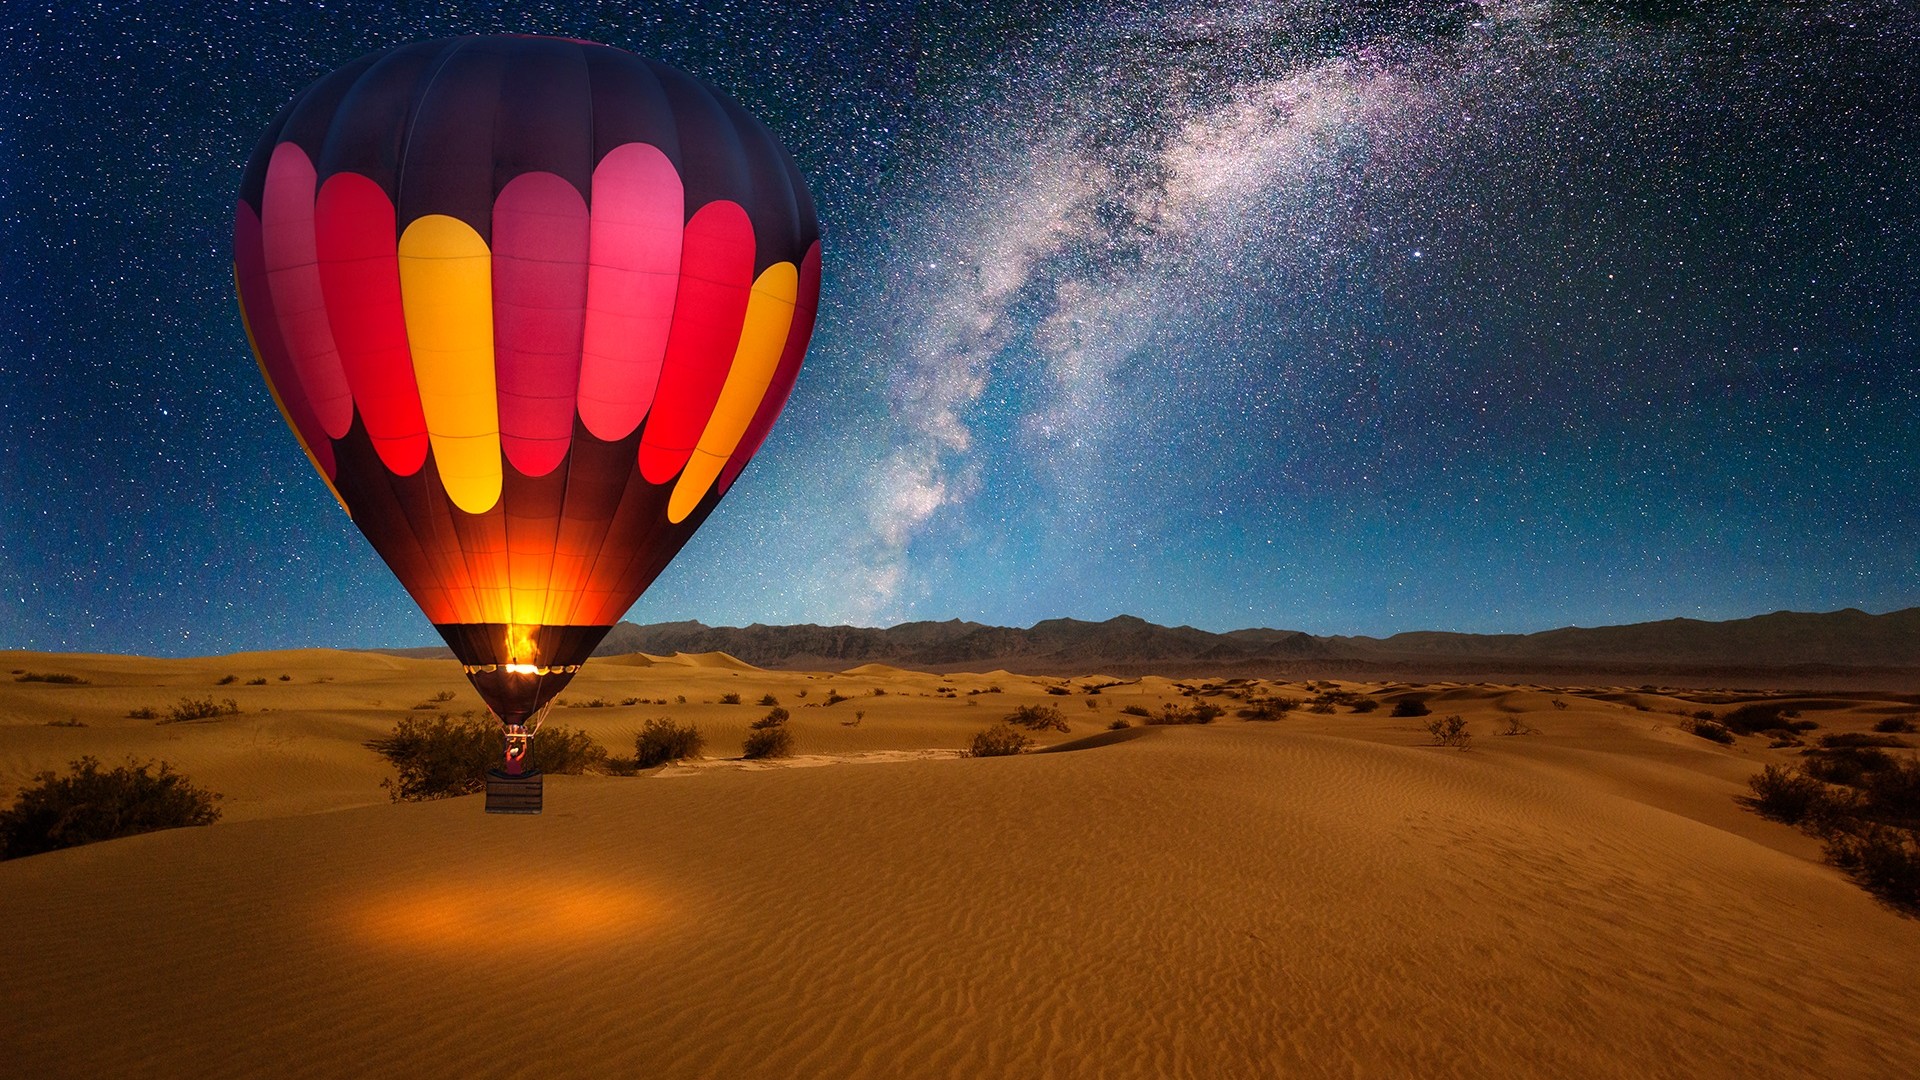 Hot Air Balloon Night , HD Wallpaper & Backgrounds